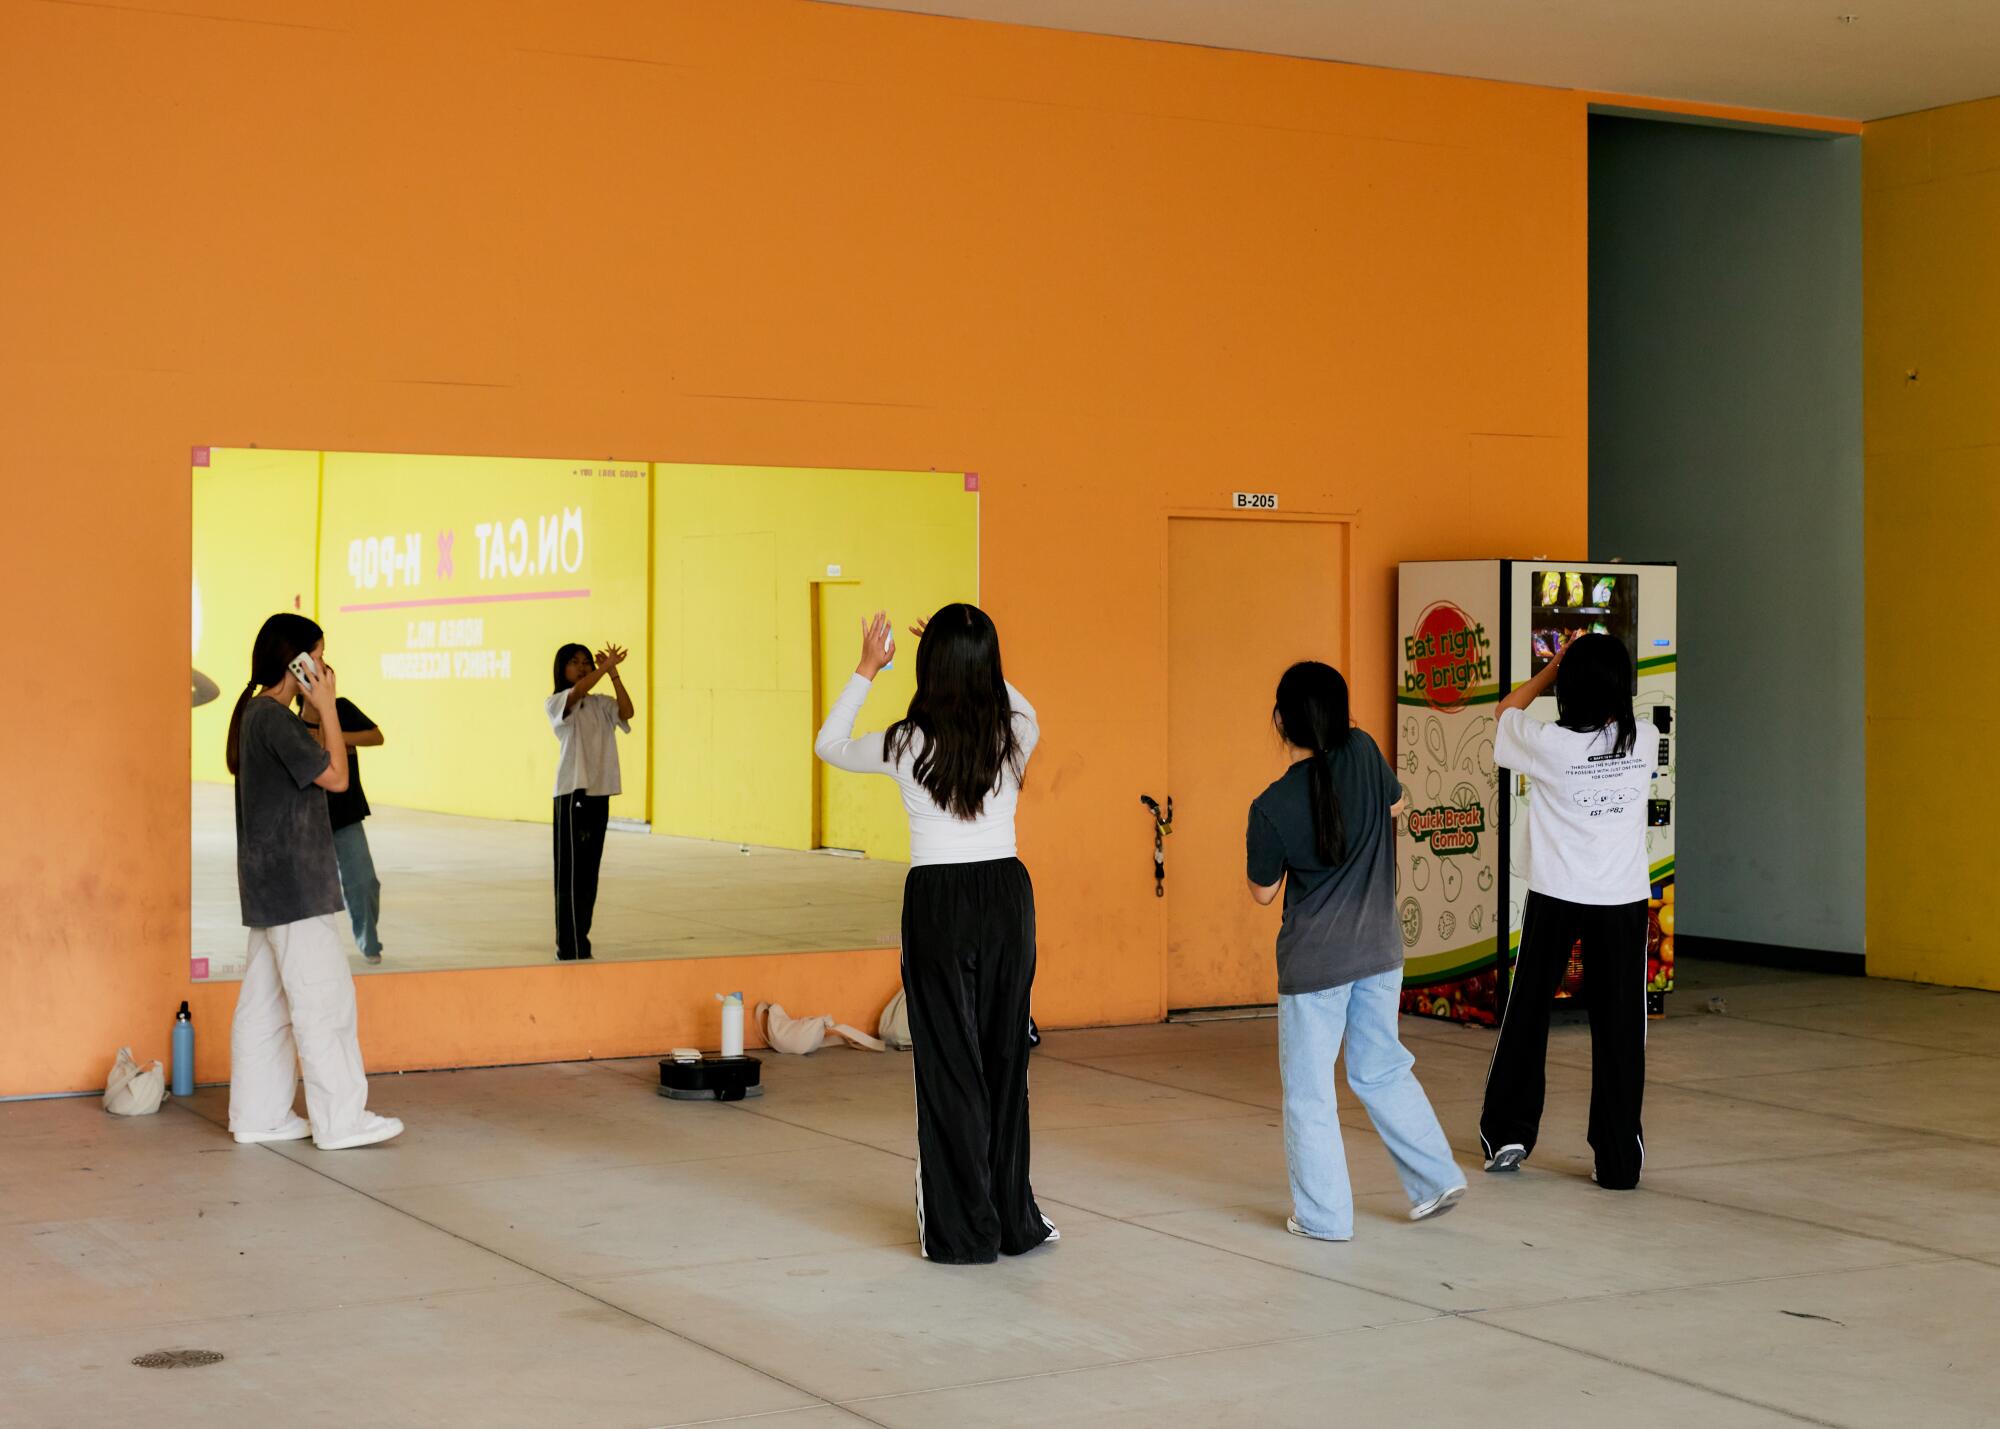 Eine Gruppe junger Leute steht in einem Einkaufszentrum vor einem Spiegel und übt ihre Tanzbewegungen.